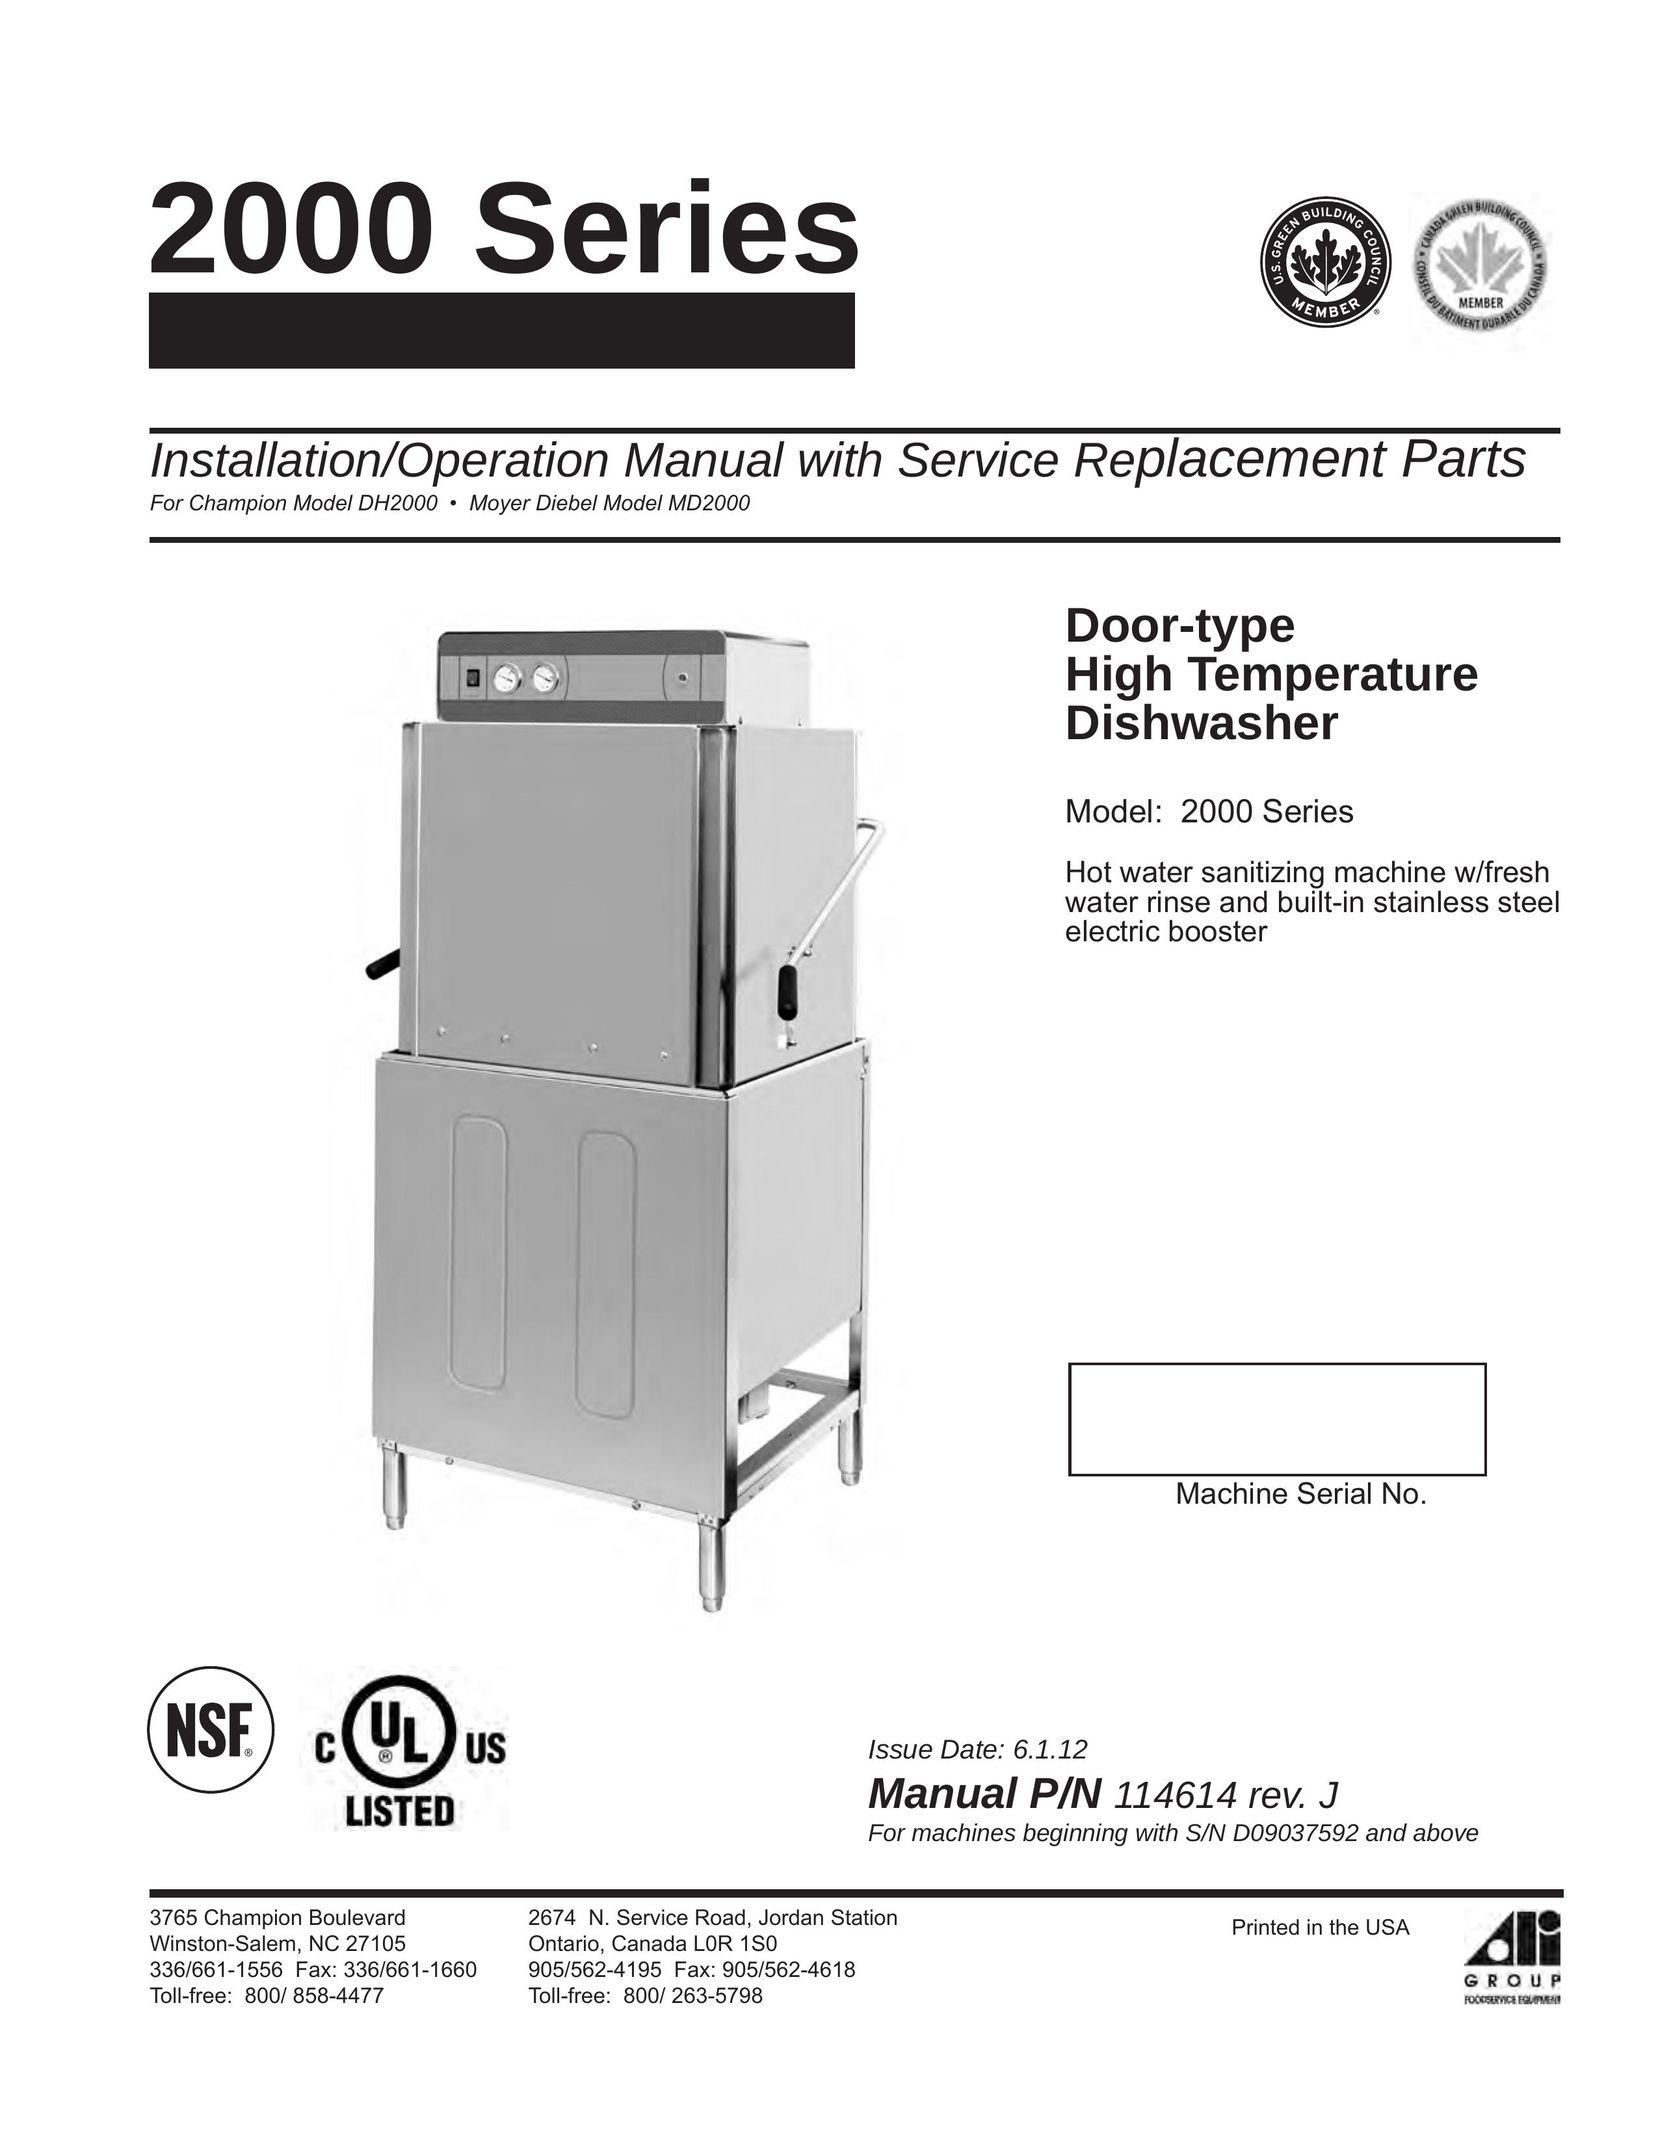 GE DH2000 Dishwasher User Manual